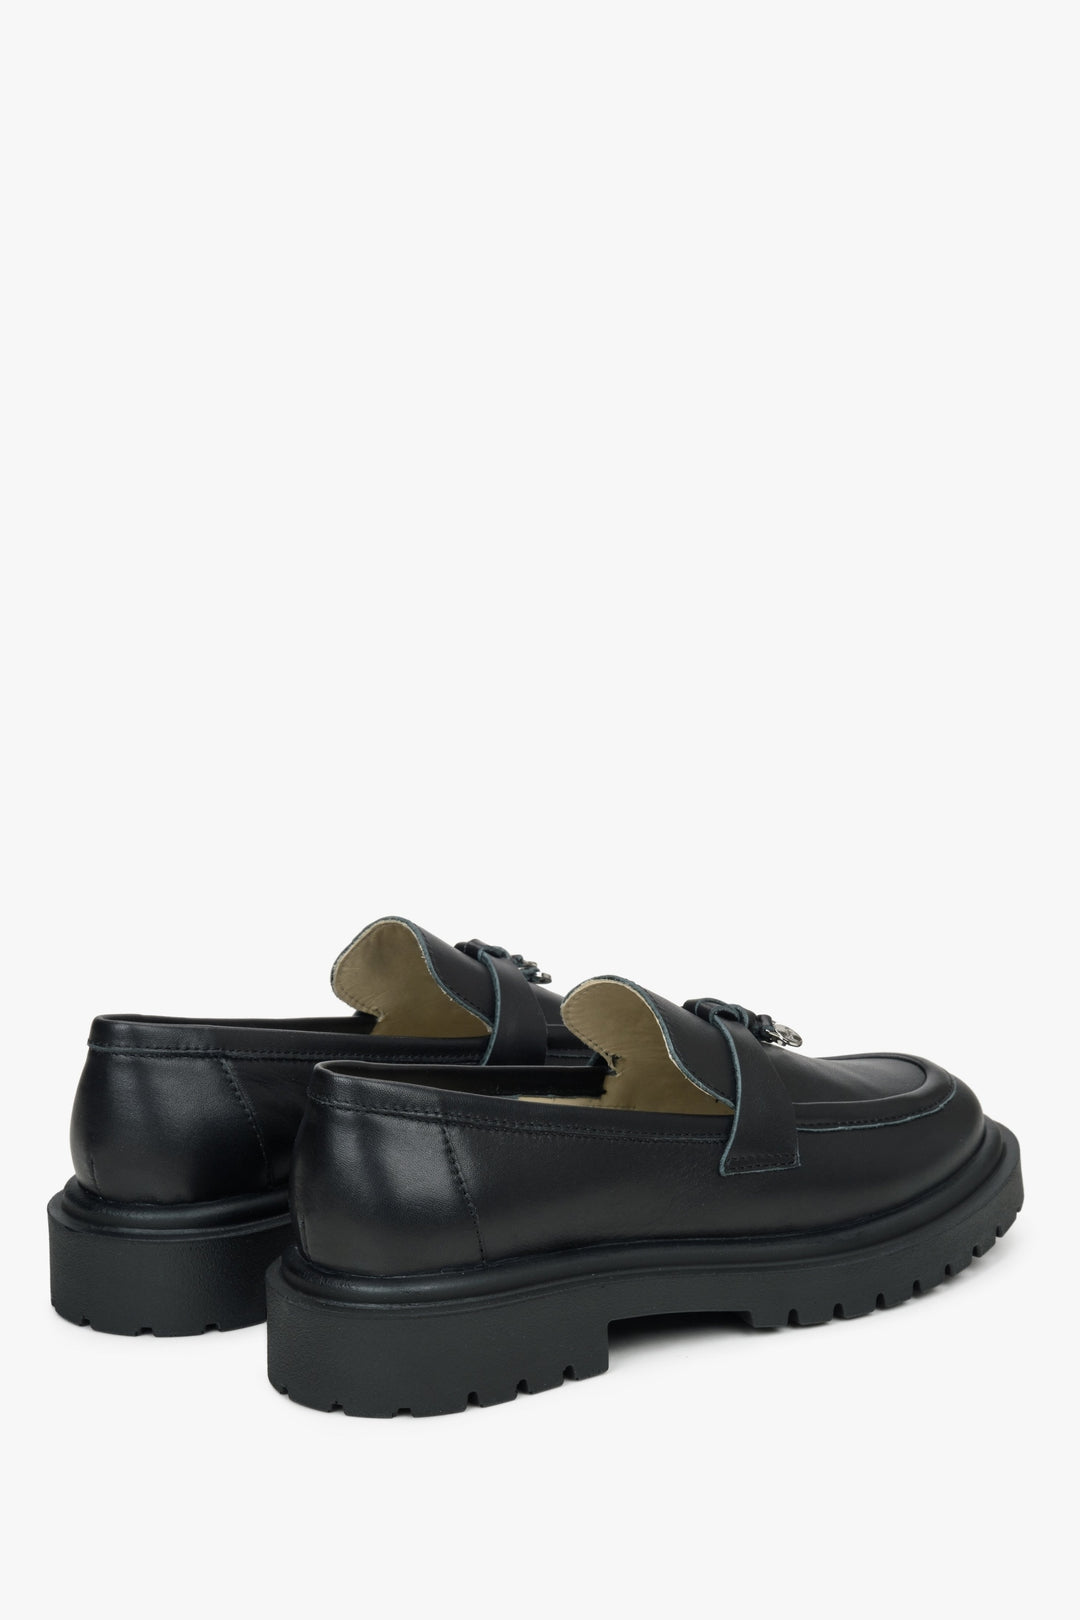 Czarne skórzane loafersy damskie Estro - zbliżenie na zapiętek i linię boczną buta.